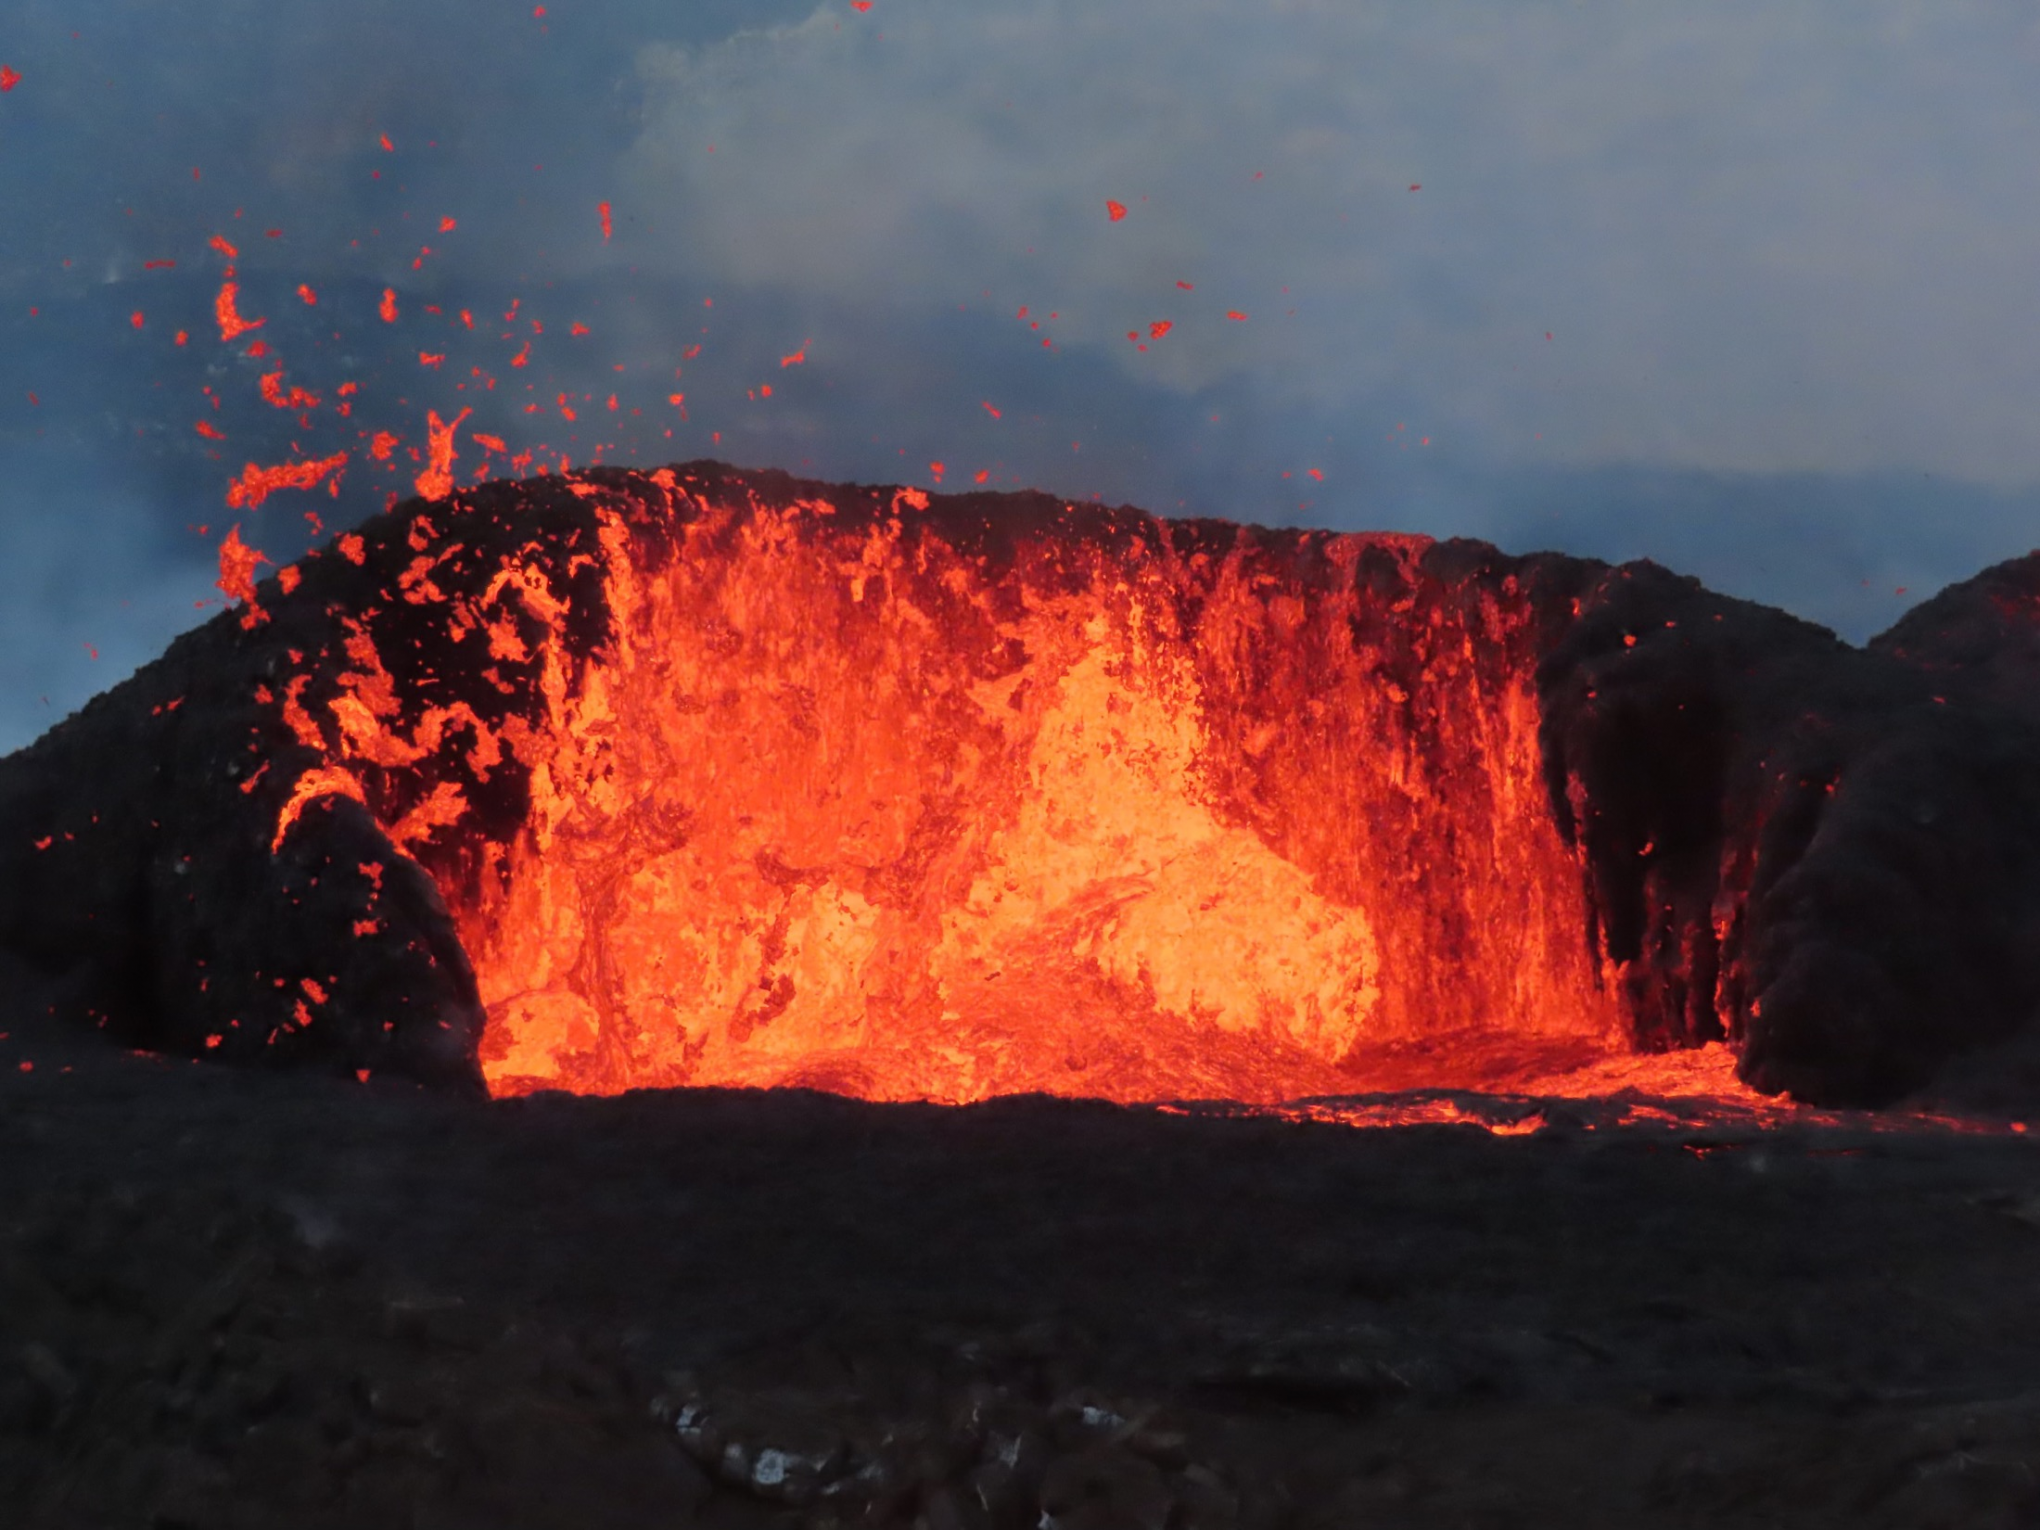 Imagens da erupção do vulcão Kilauea no Havaí